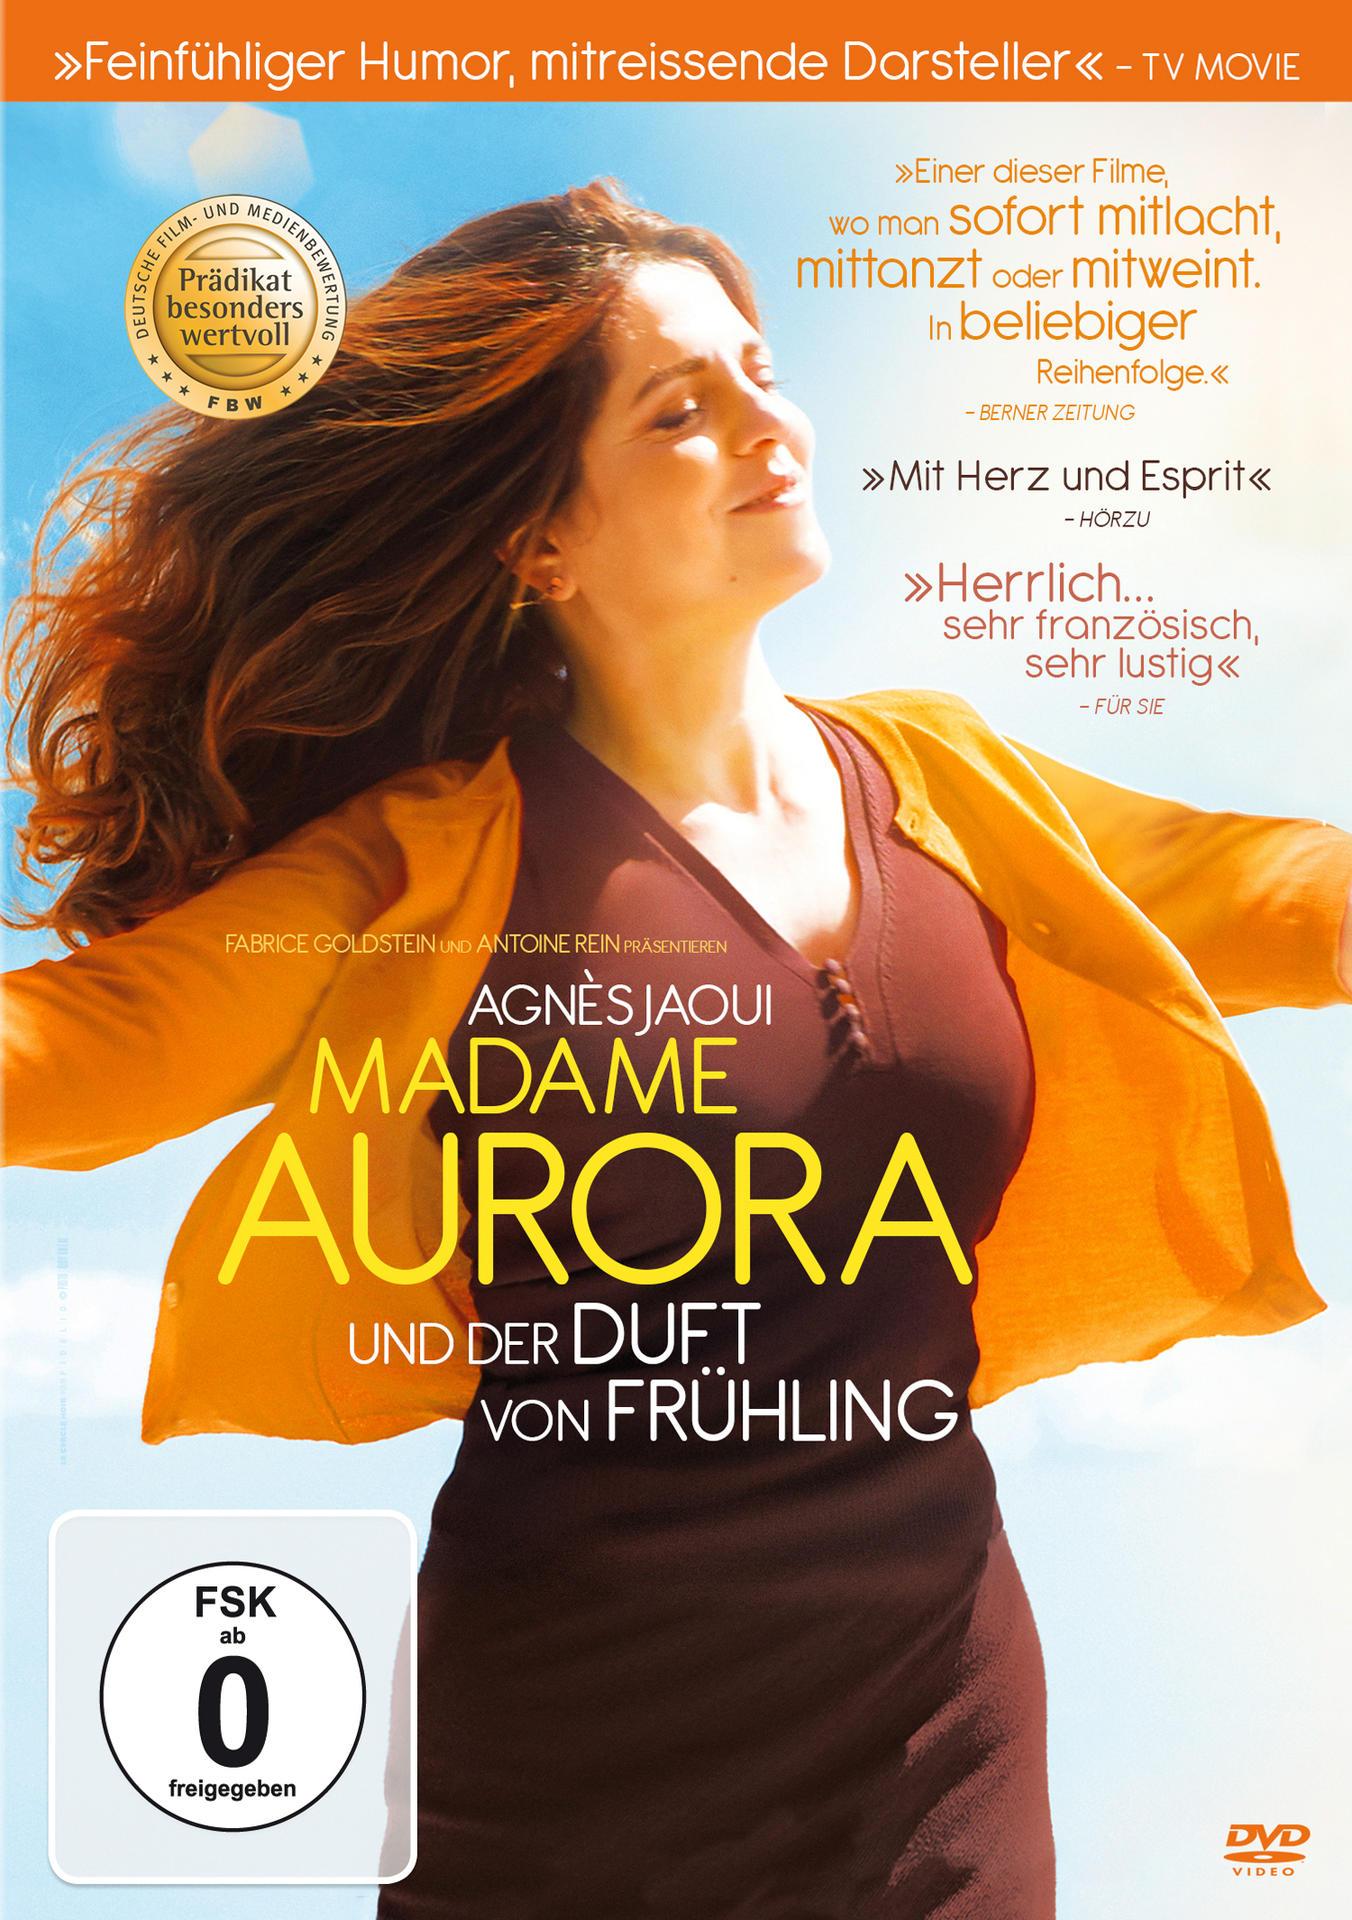 Madame Aurora und Frühling Duft DVD von der